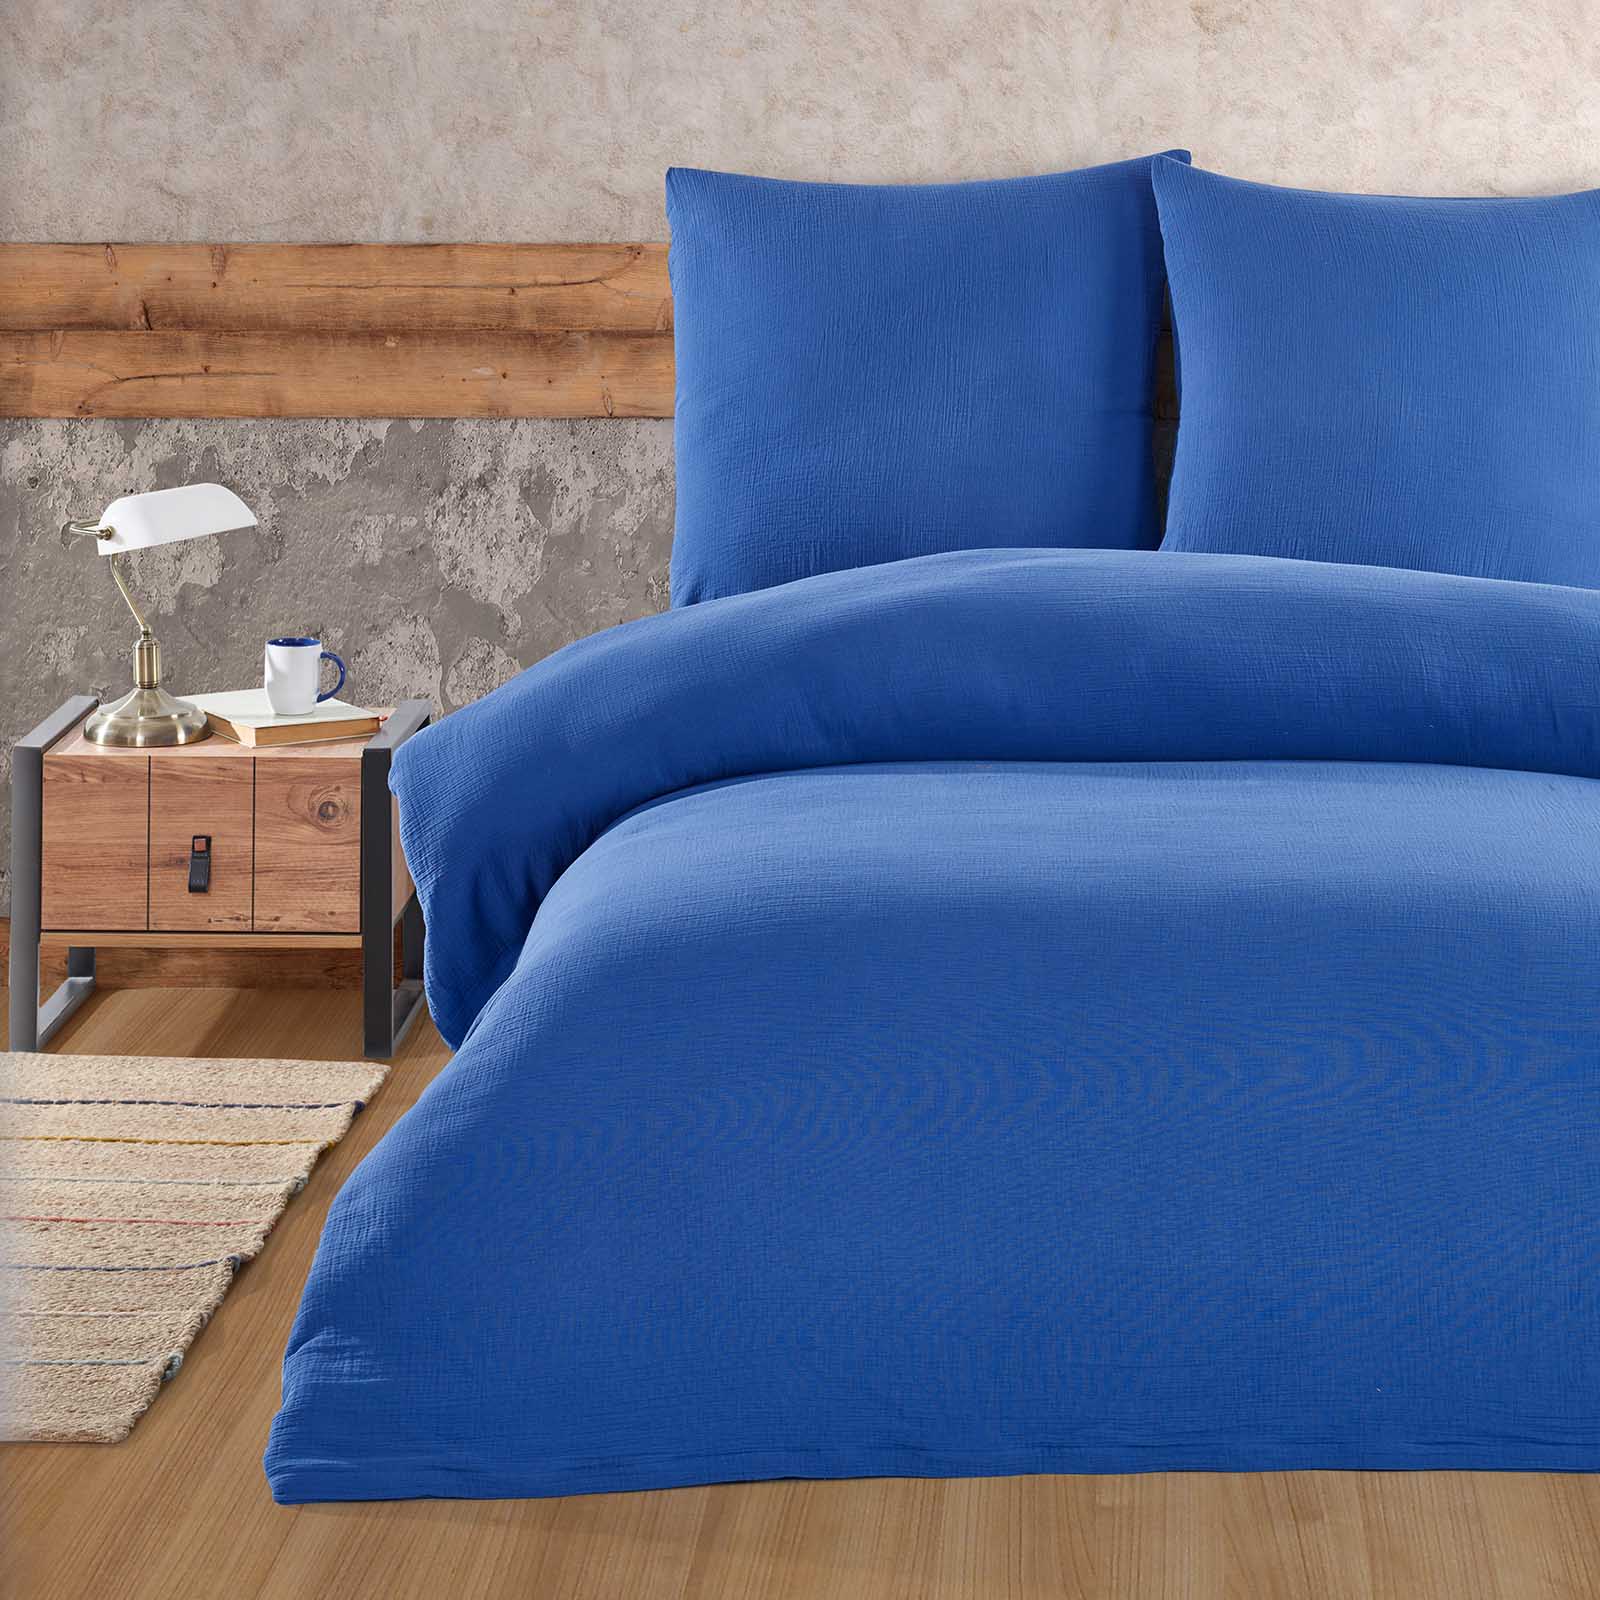 Buymax® Musselin Bettwäsche Set aus Baumwolle, Blau, 155x220 cm